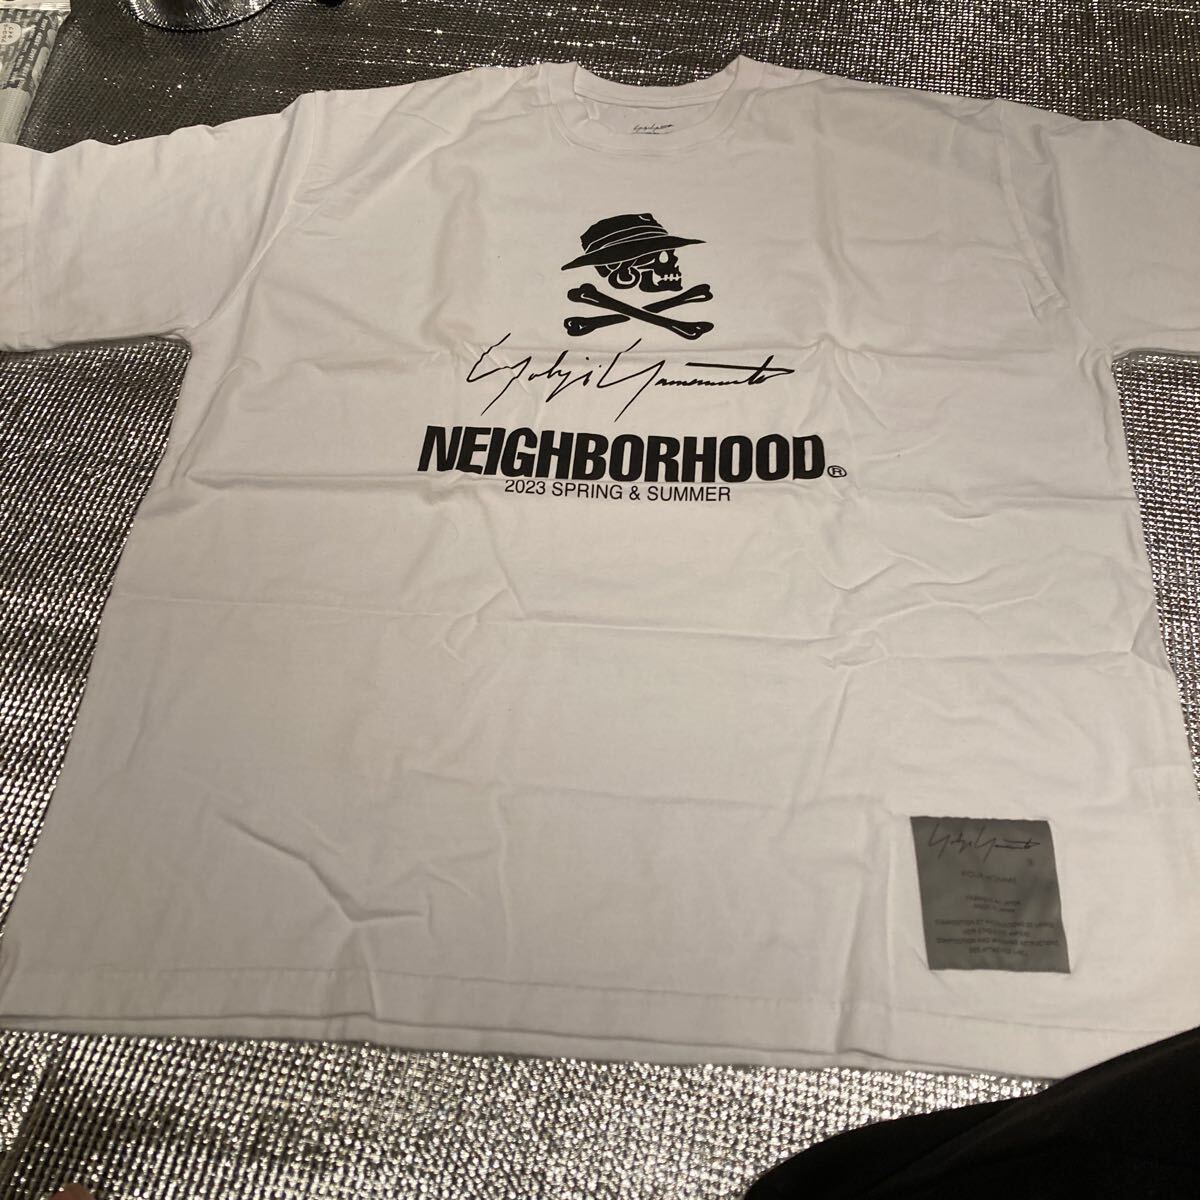  Yohji Yamamoto Neighborhood короткий рукав белый футболка XL